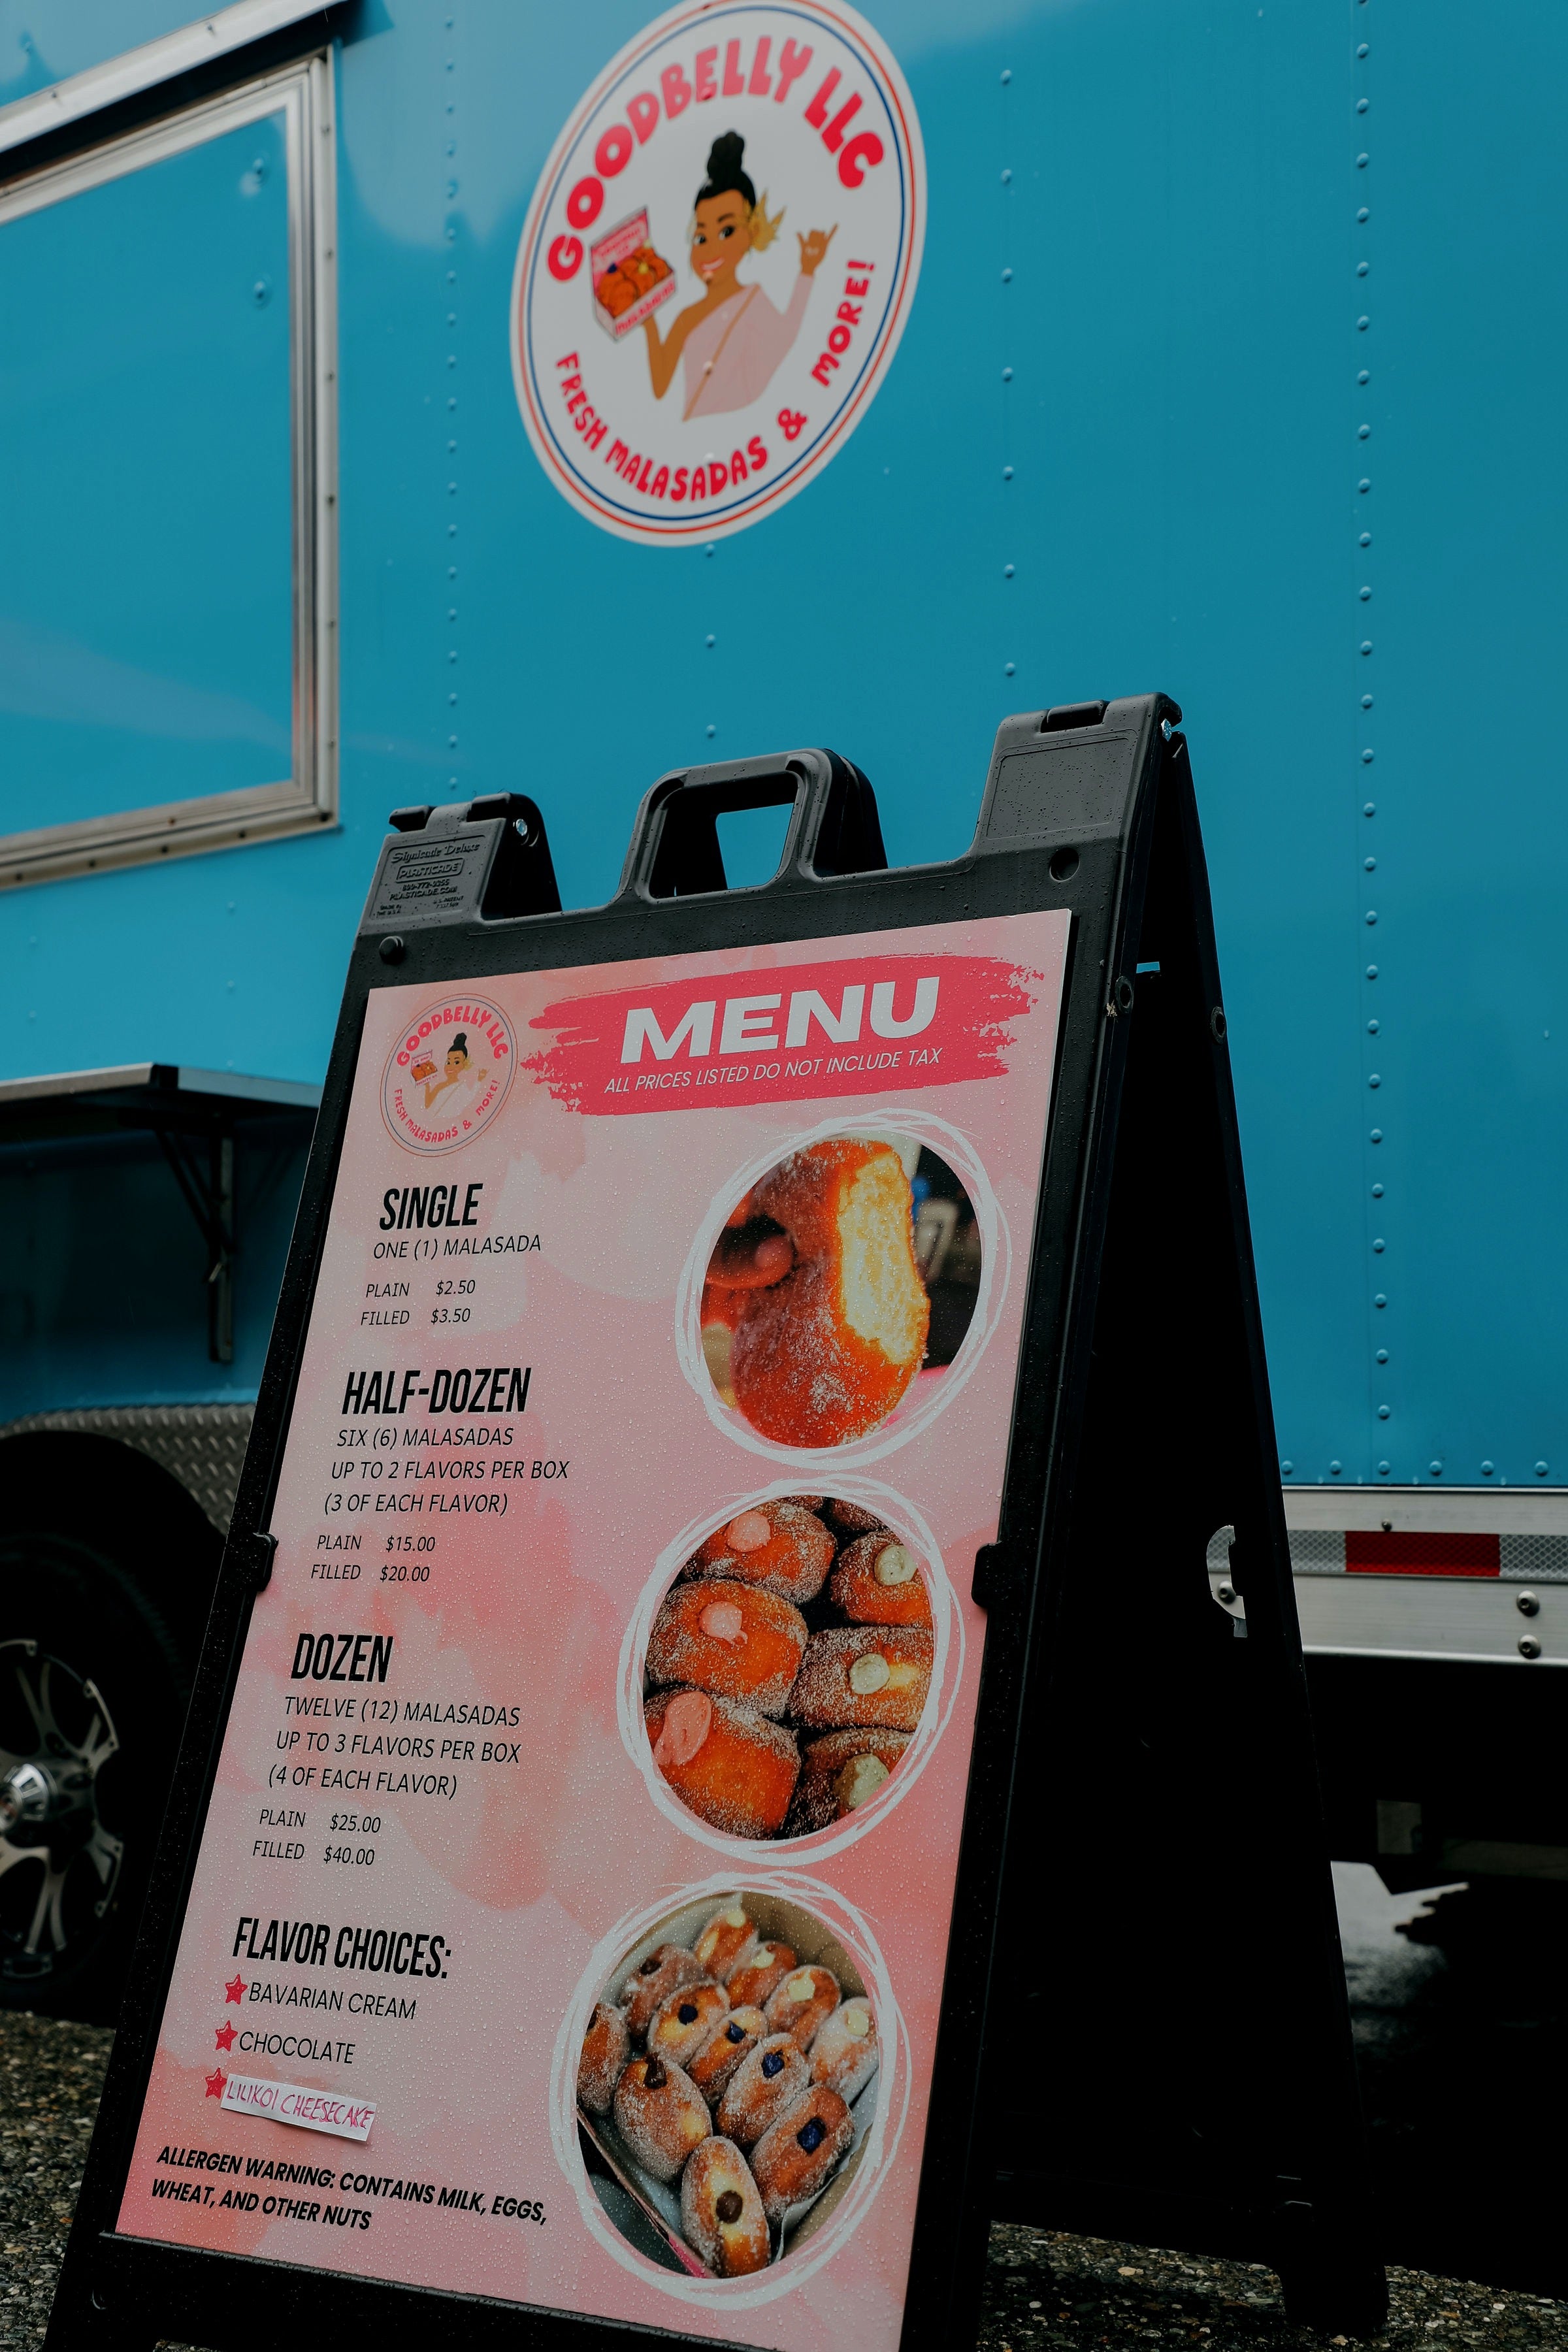 GoodBelly llc - Everett, WA - Food Truck